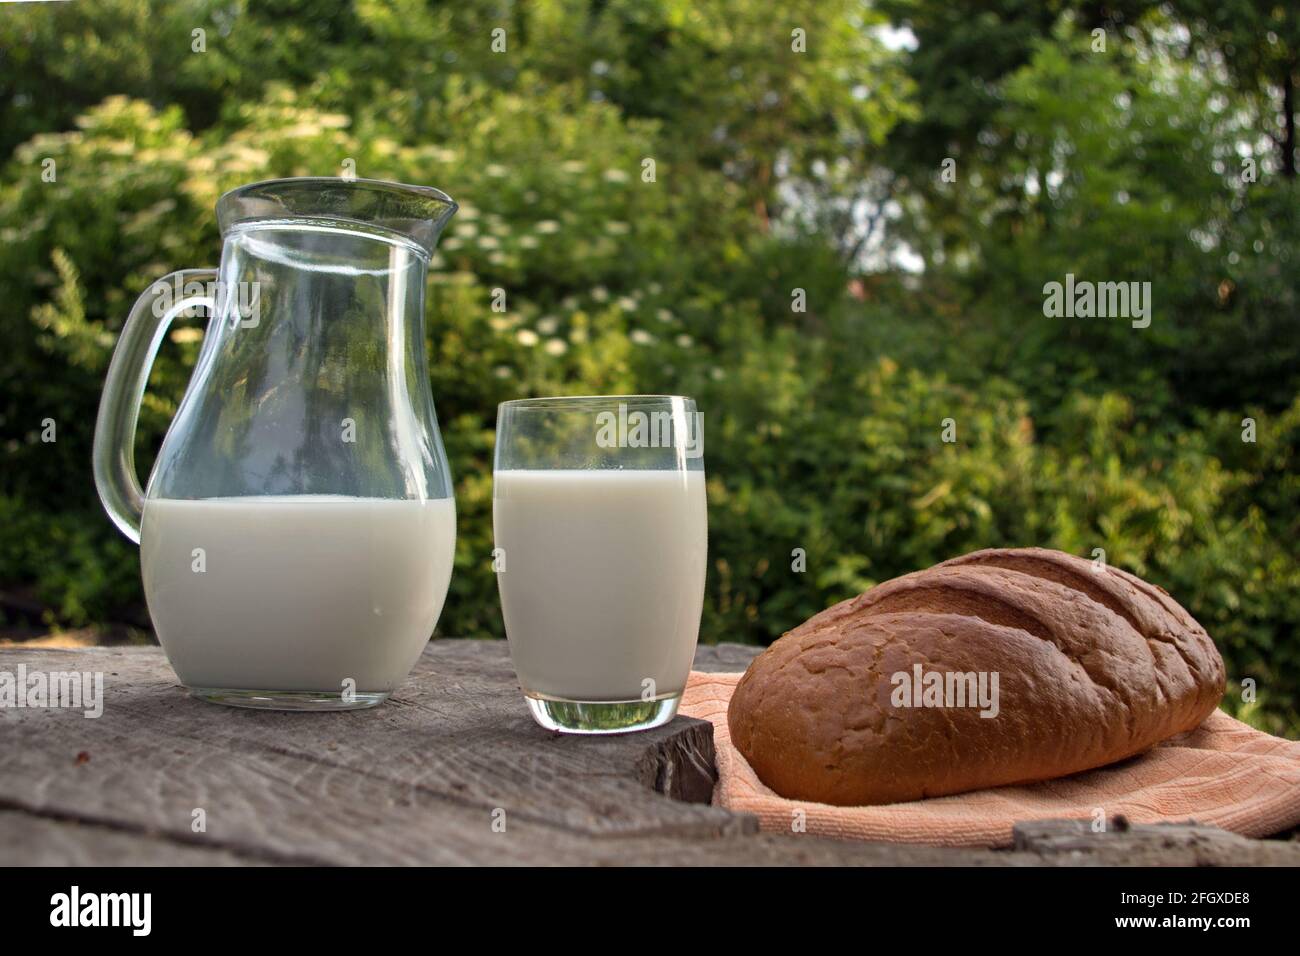 Un pain oblong de pain blanc avec une croûte brune, un pot en verre et un verre transparent rempli de lait blanc se tiennent sur une vieille souche grise au milieu de la flous FO Banque D'Images